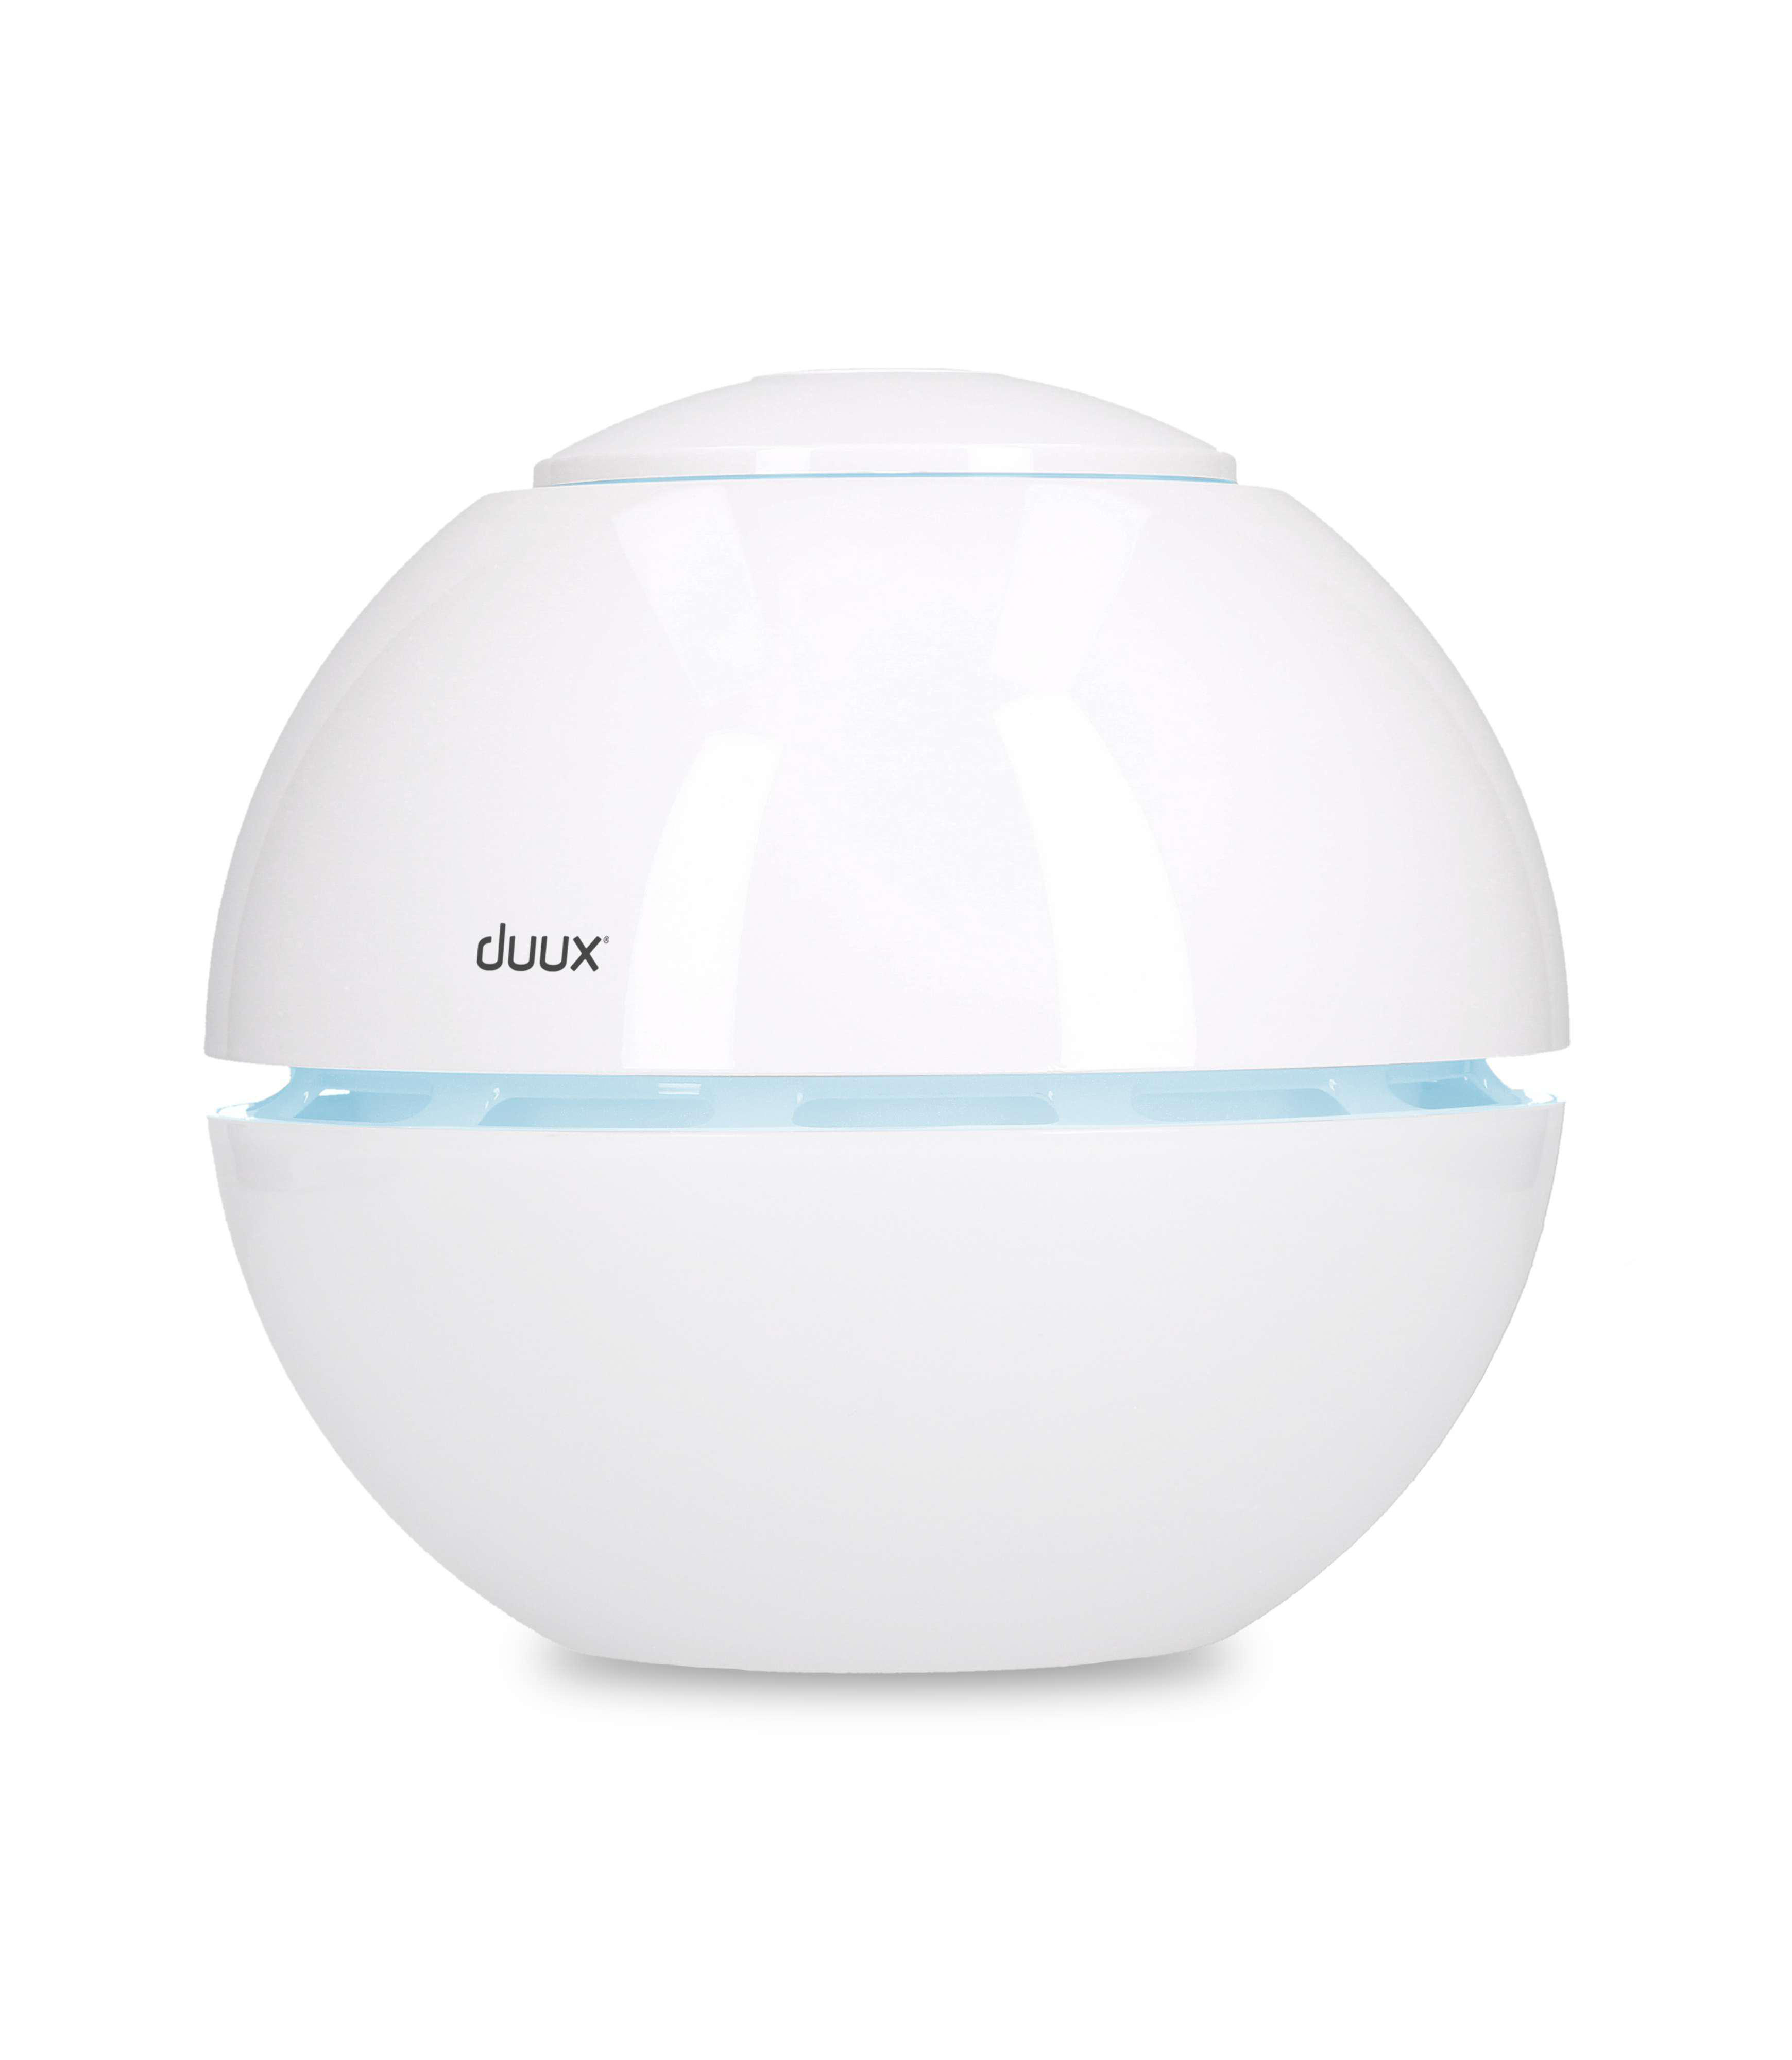 DUUX DXUH04 Sphere (15 15 m²) Raumgröße: Weiß Ultrasonic Watt, Luftbefeuchter